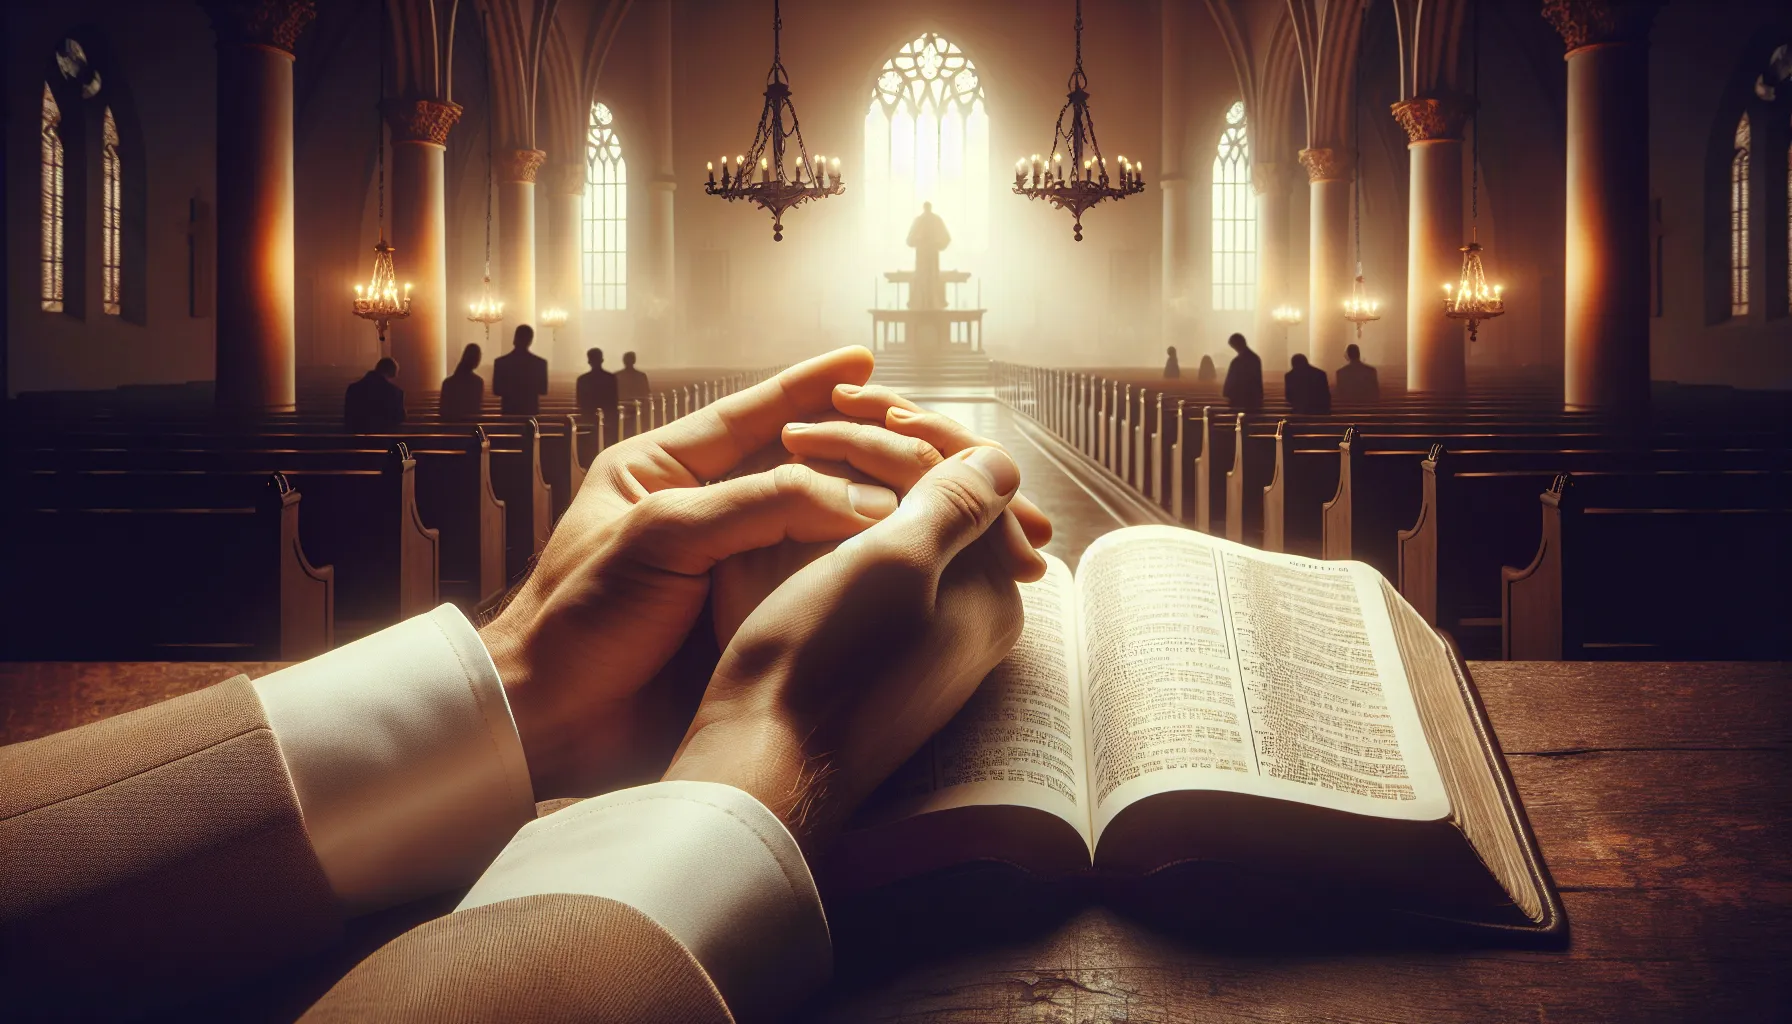 Imagen de portada del artículo titulado 'Cómo fortalecer la fe y la oración según la Biblia'.